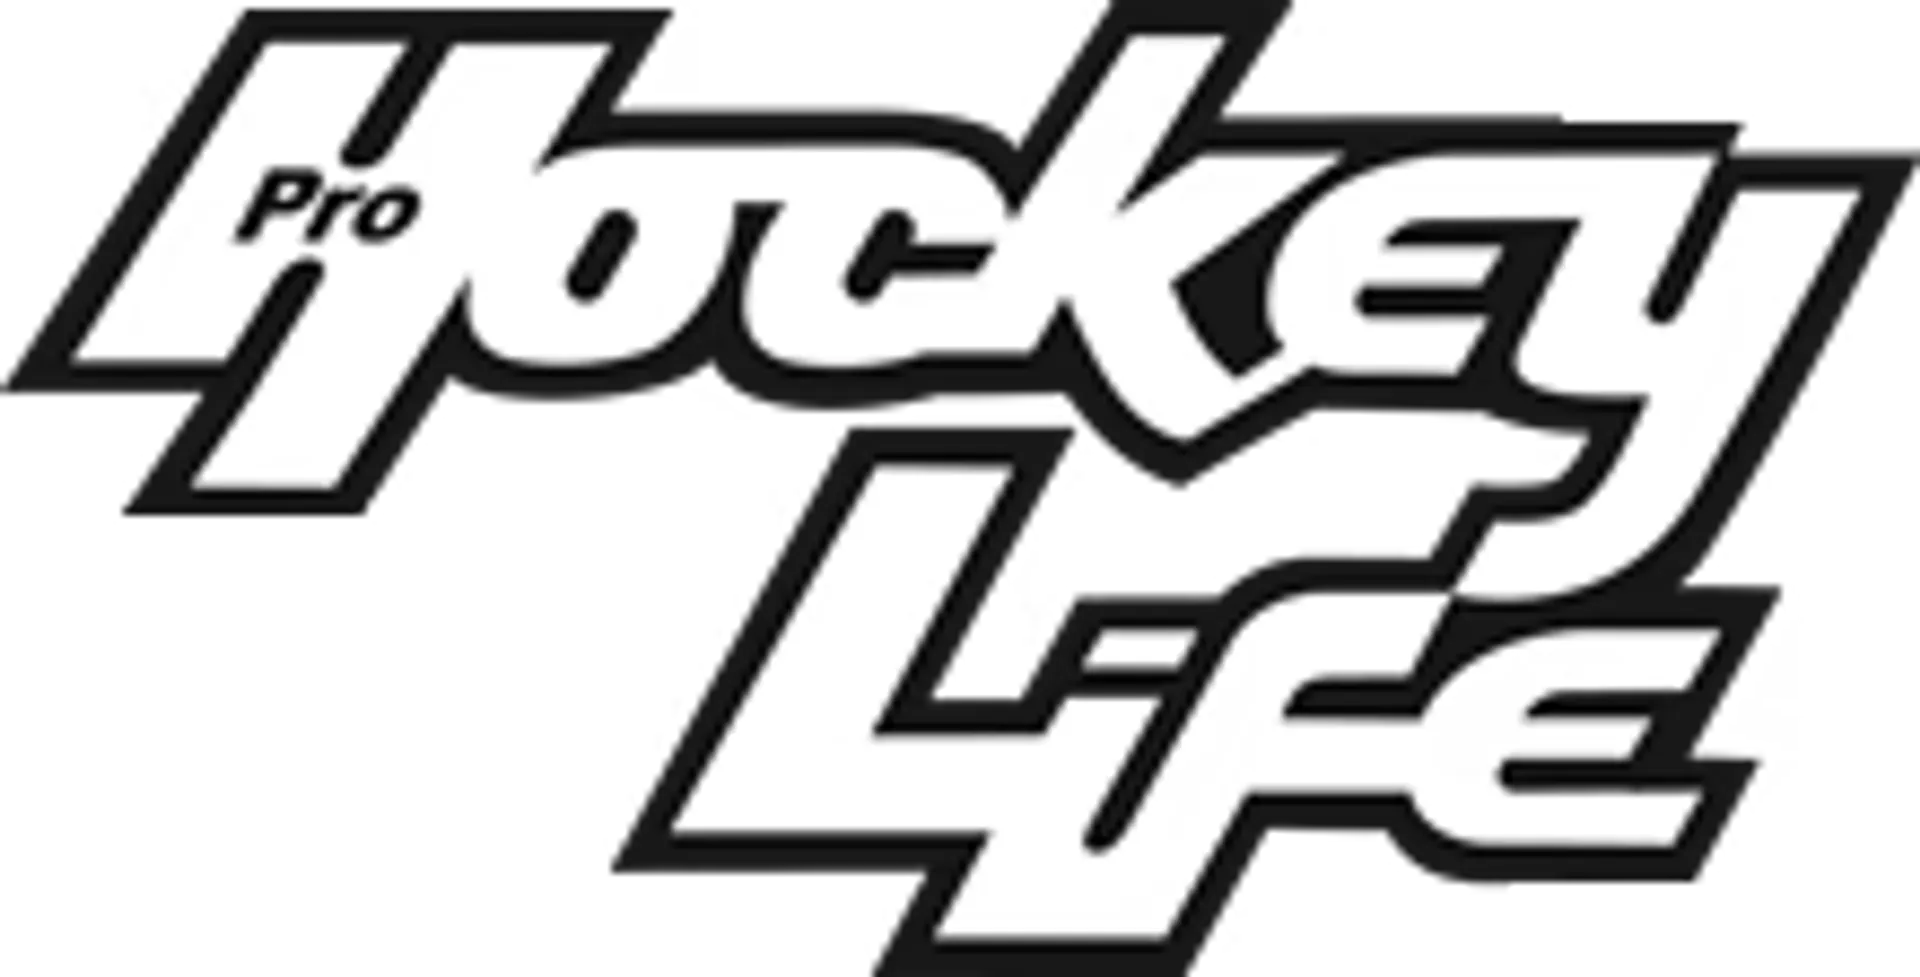 HOCKEY LIFE logo